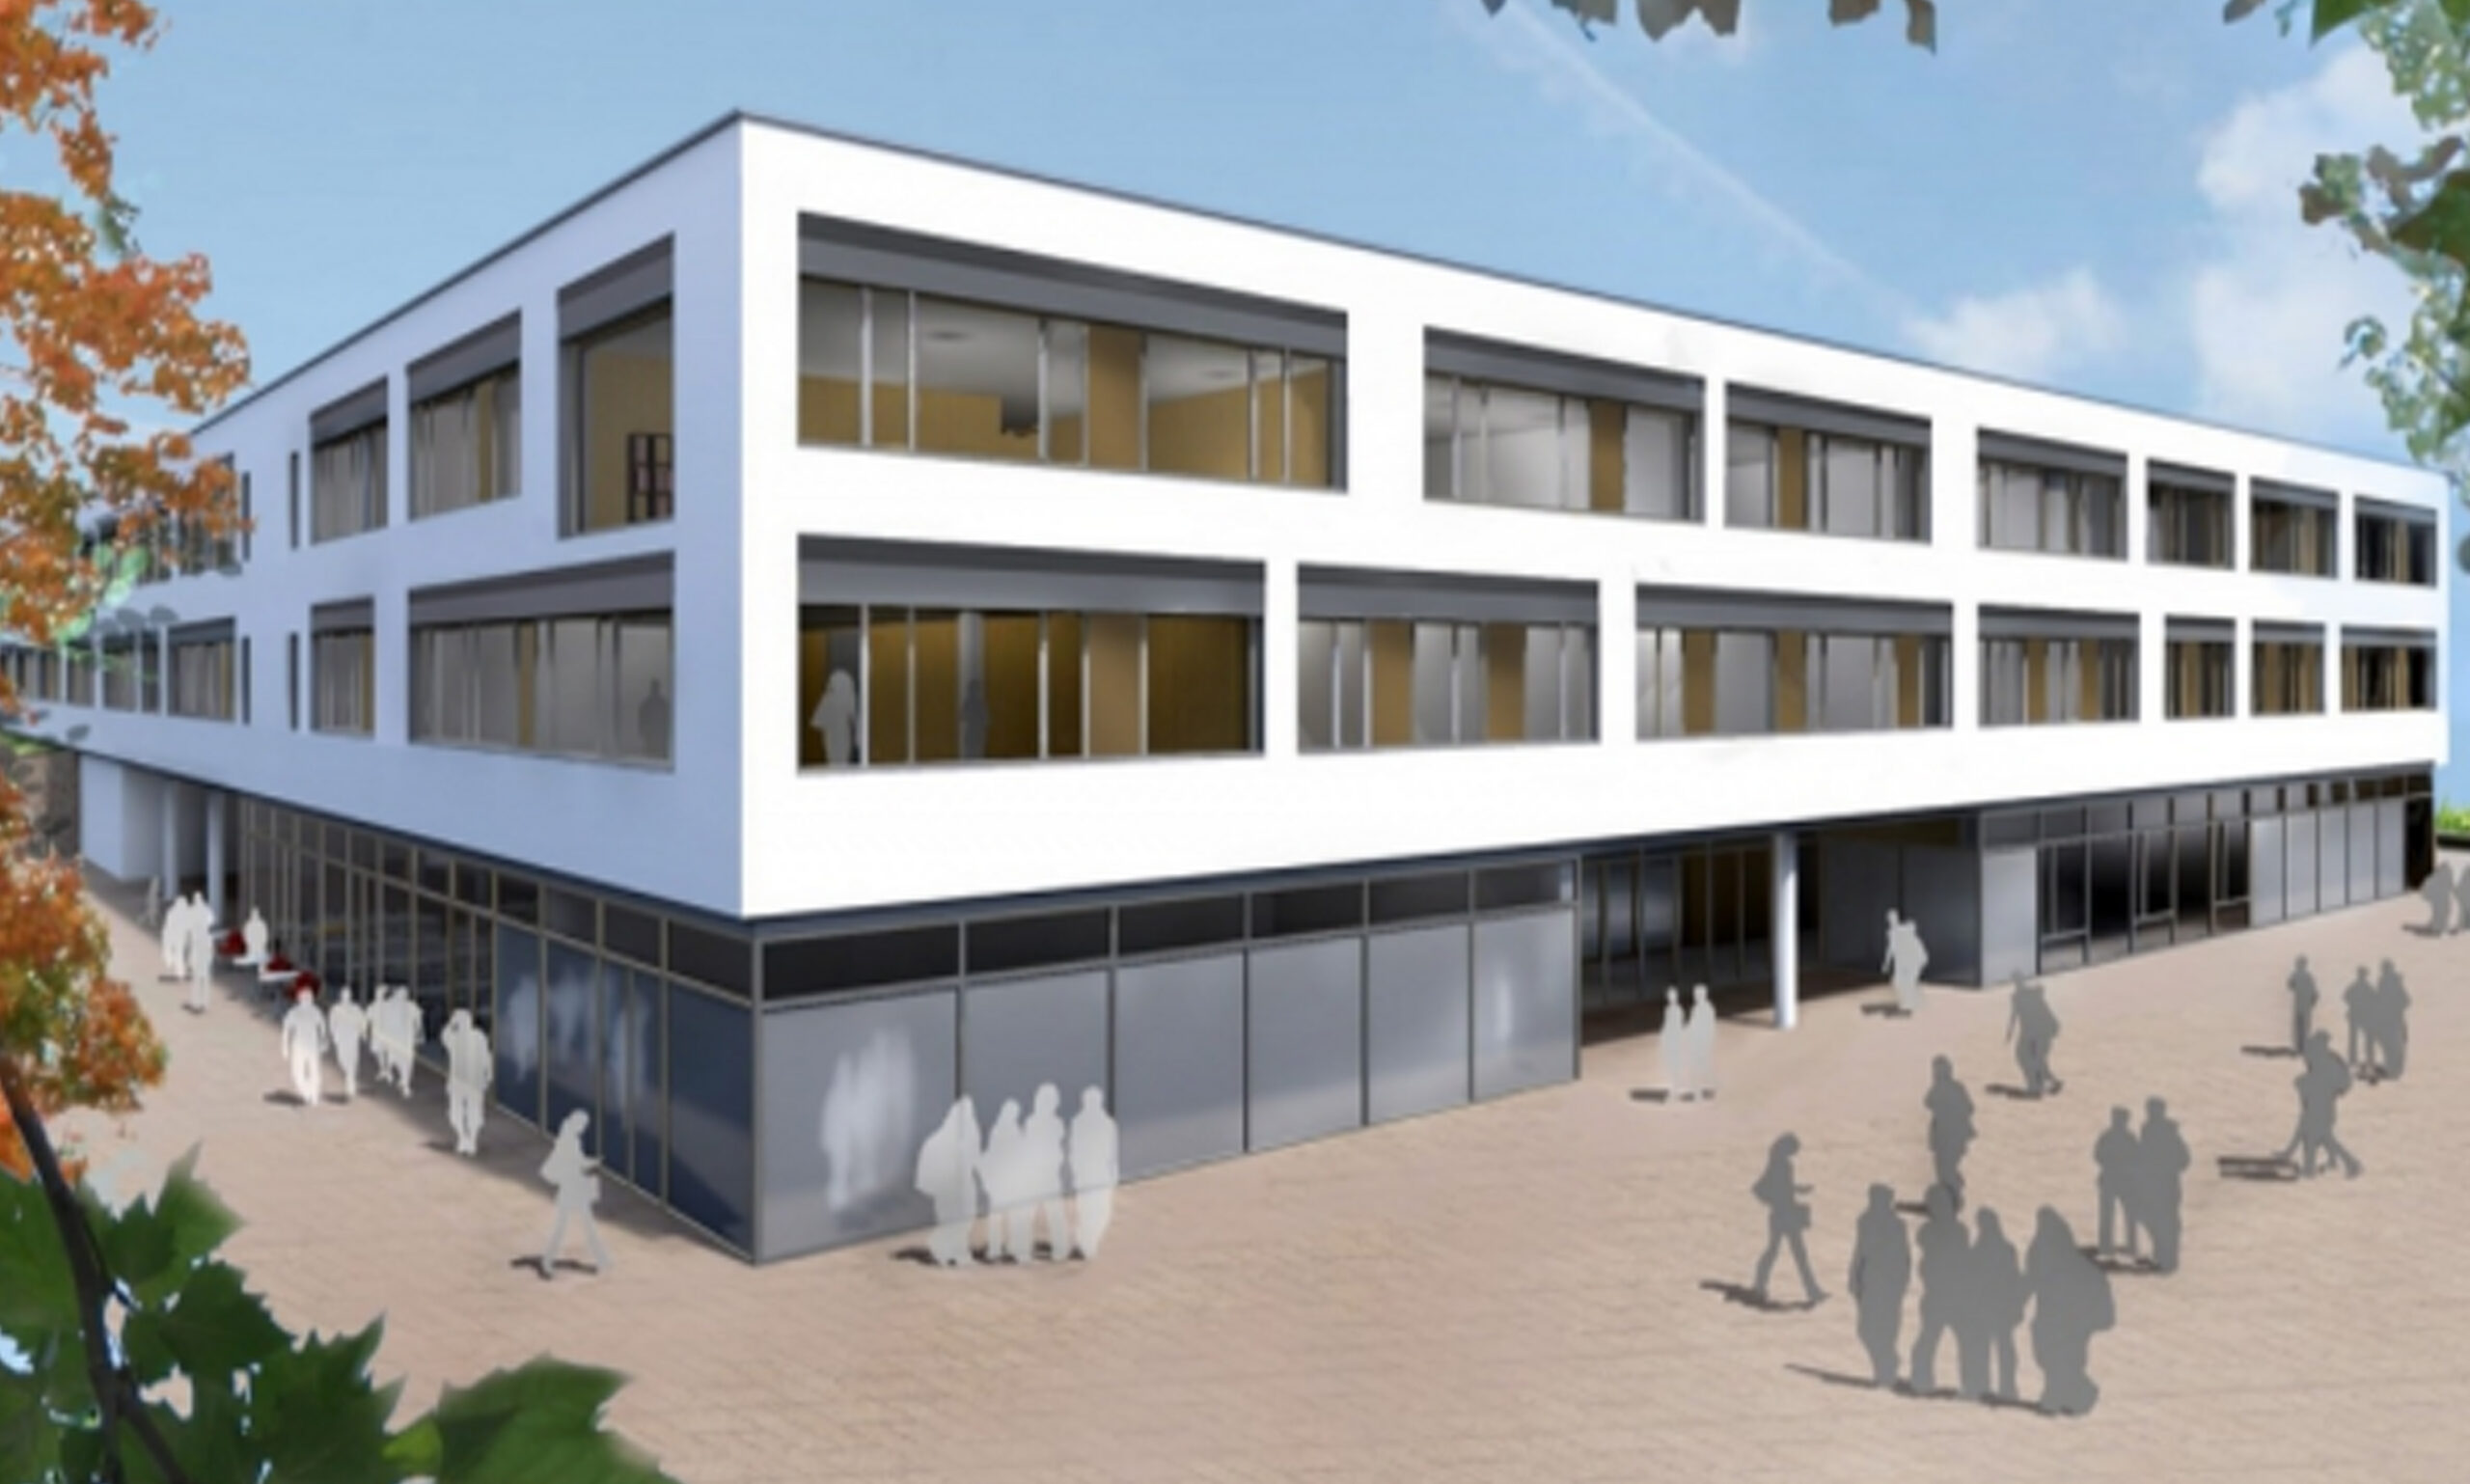 Wettbewerb Gymnasium Lappersdorf, Architekt: ARGE Guthann & HIW Architekten / CAD Visualisierung, Photoshop